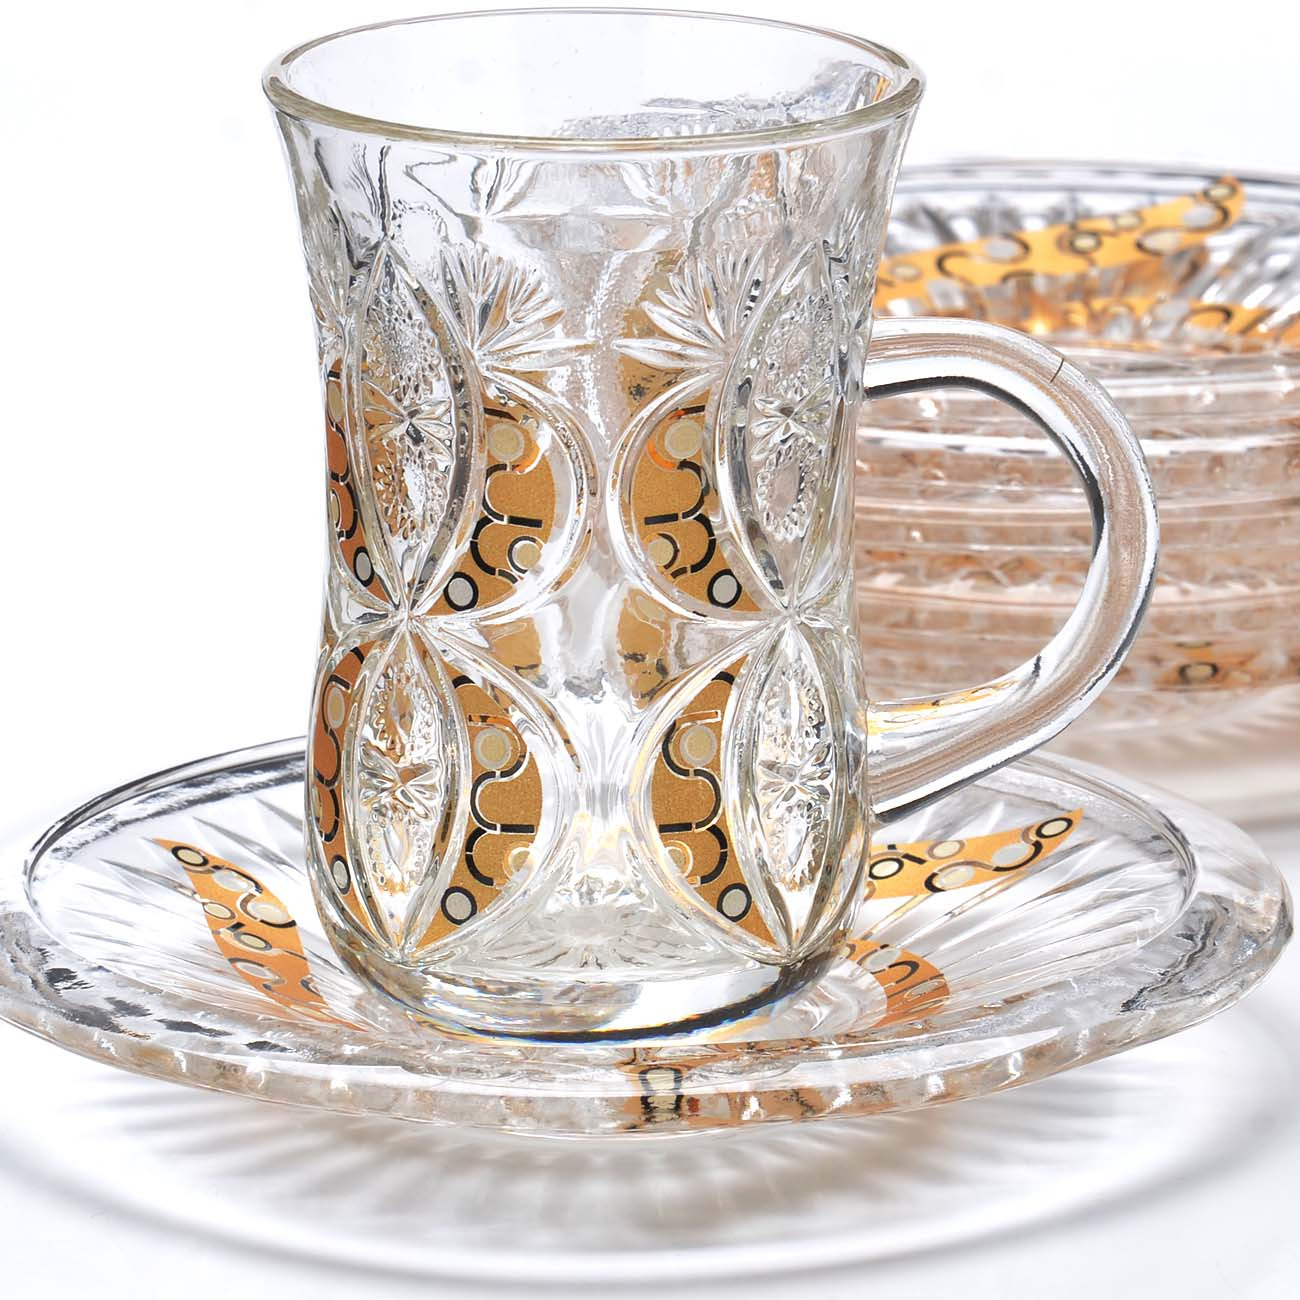 фото Набор чайный Loraine, цвет: прозрачный, золотой, 12 предметов